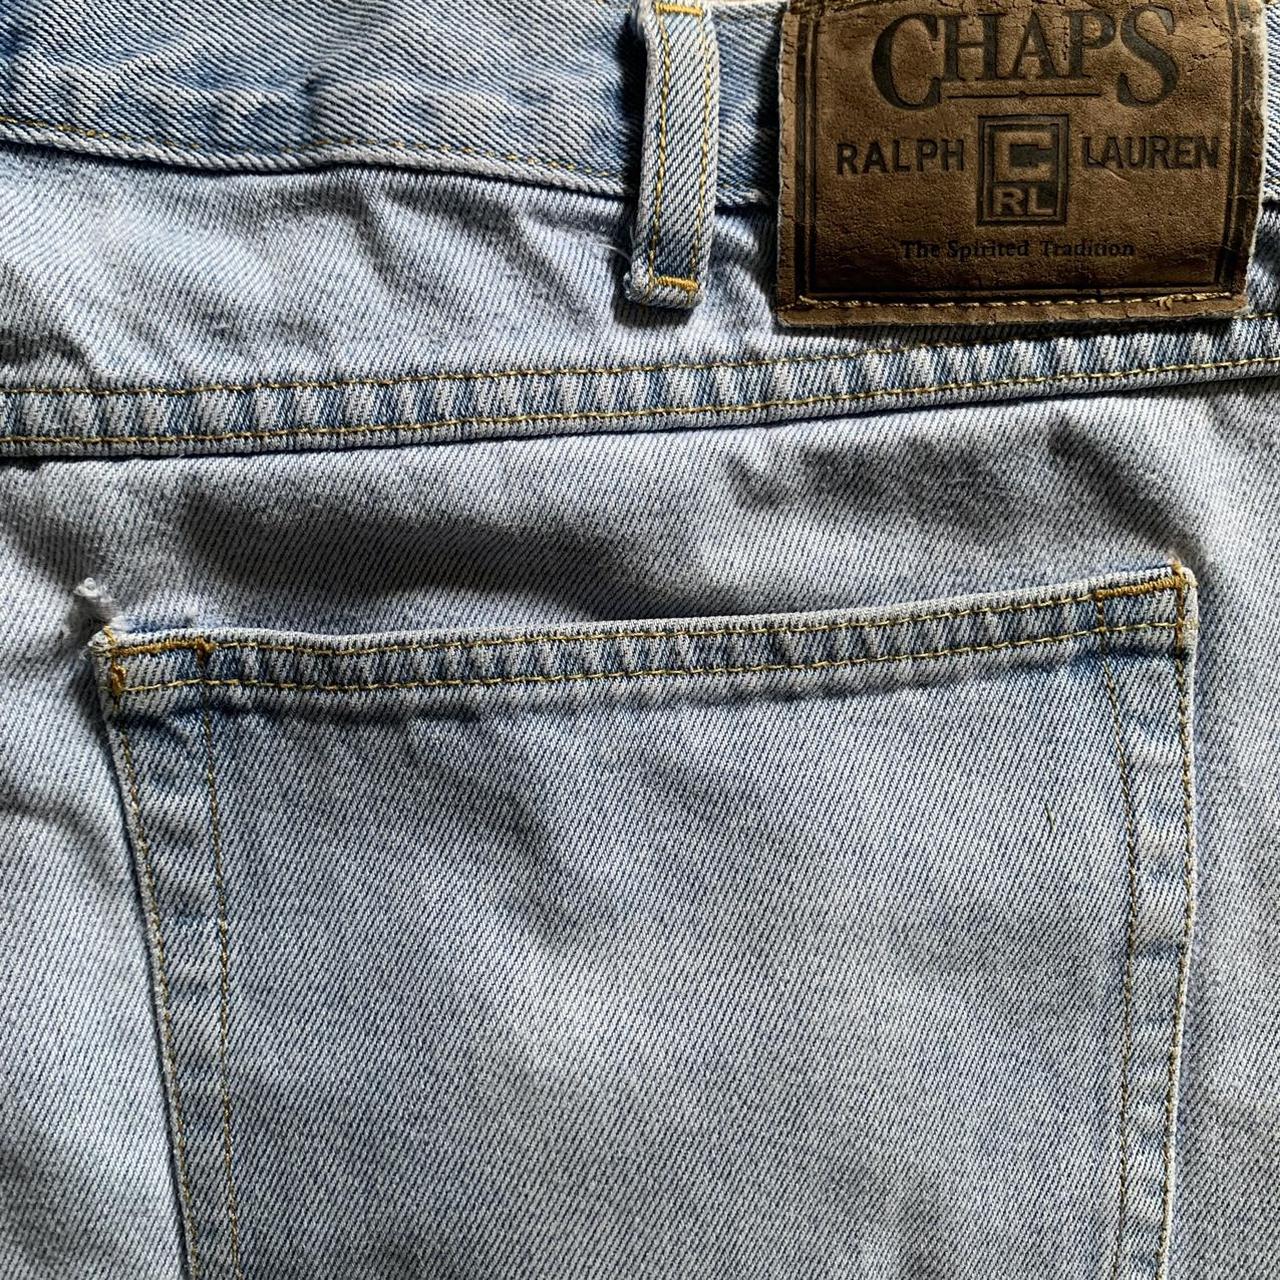 Chaps Men's Shorts | Depop